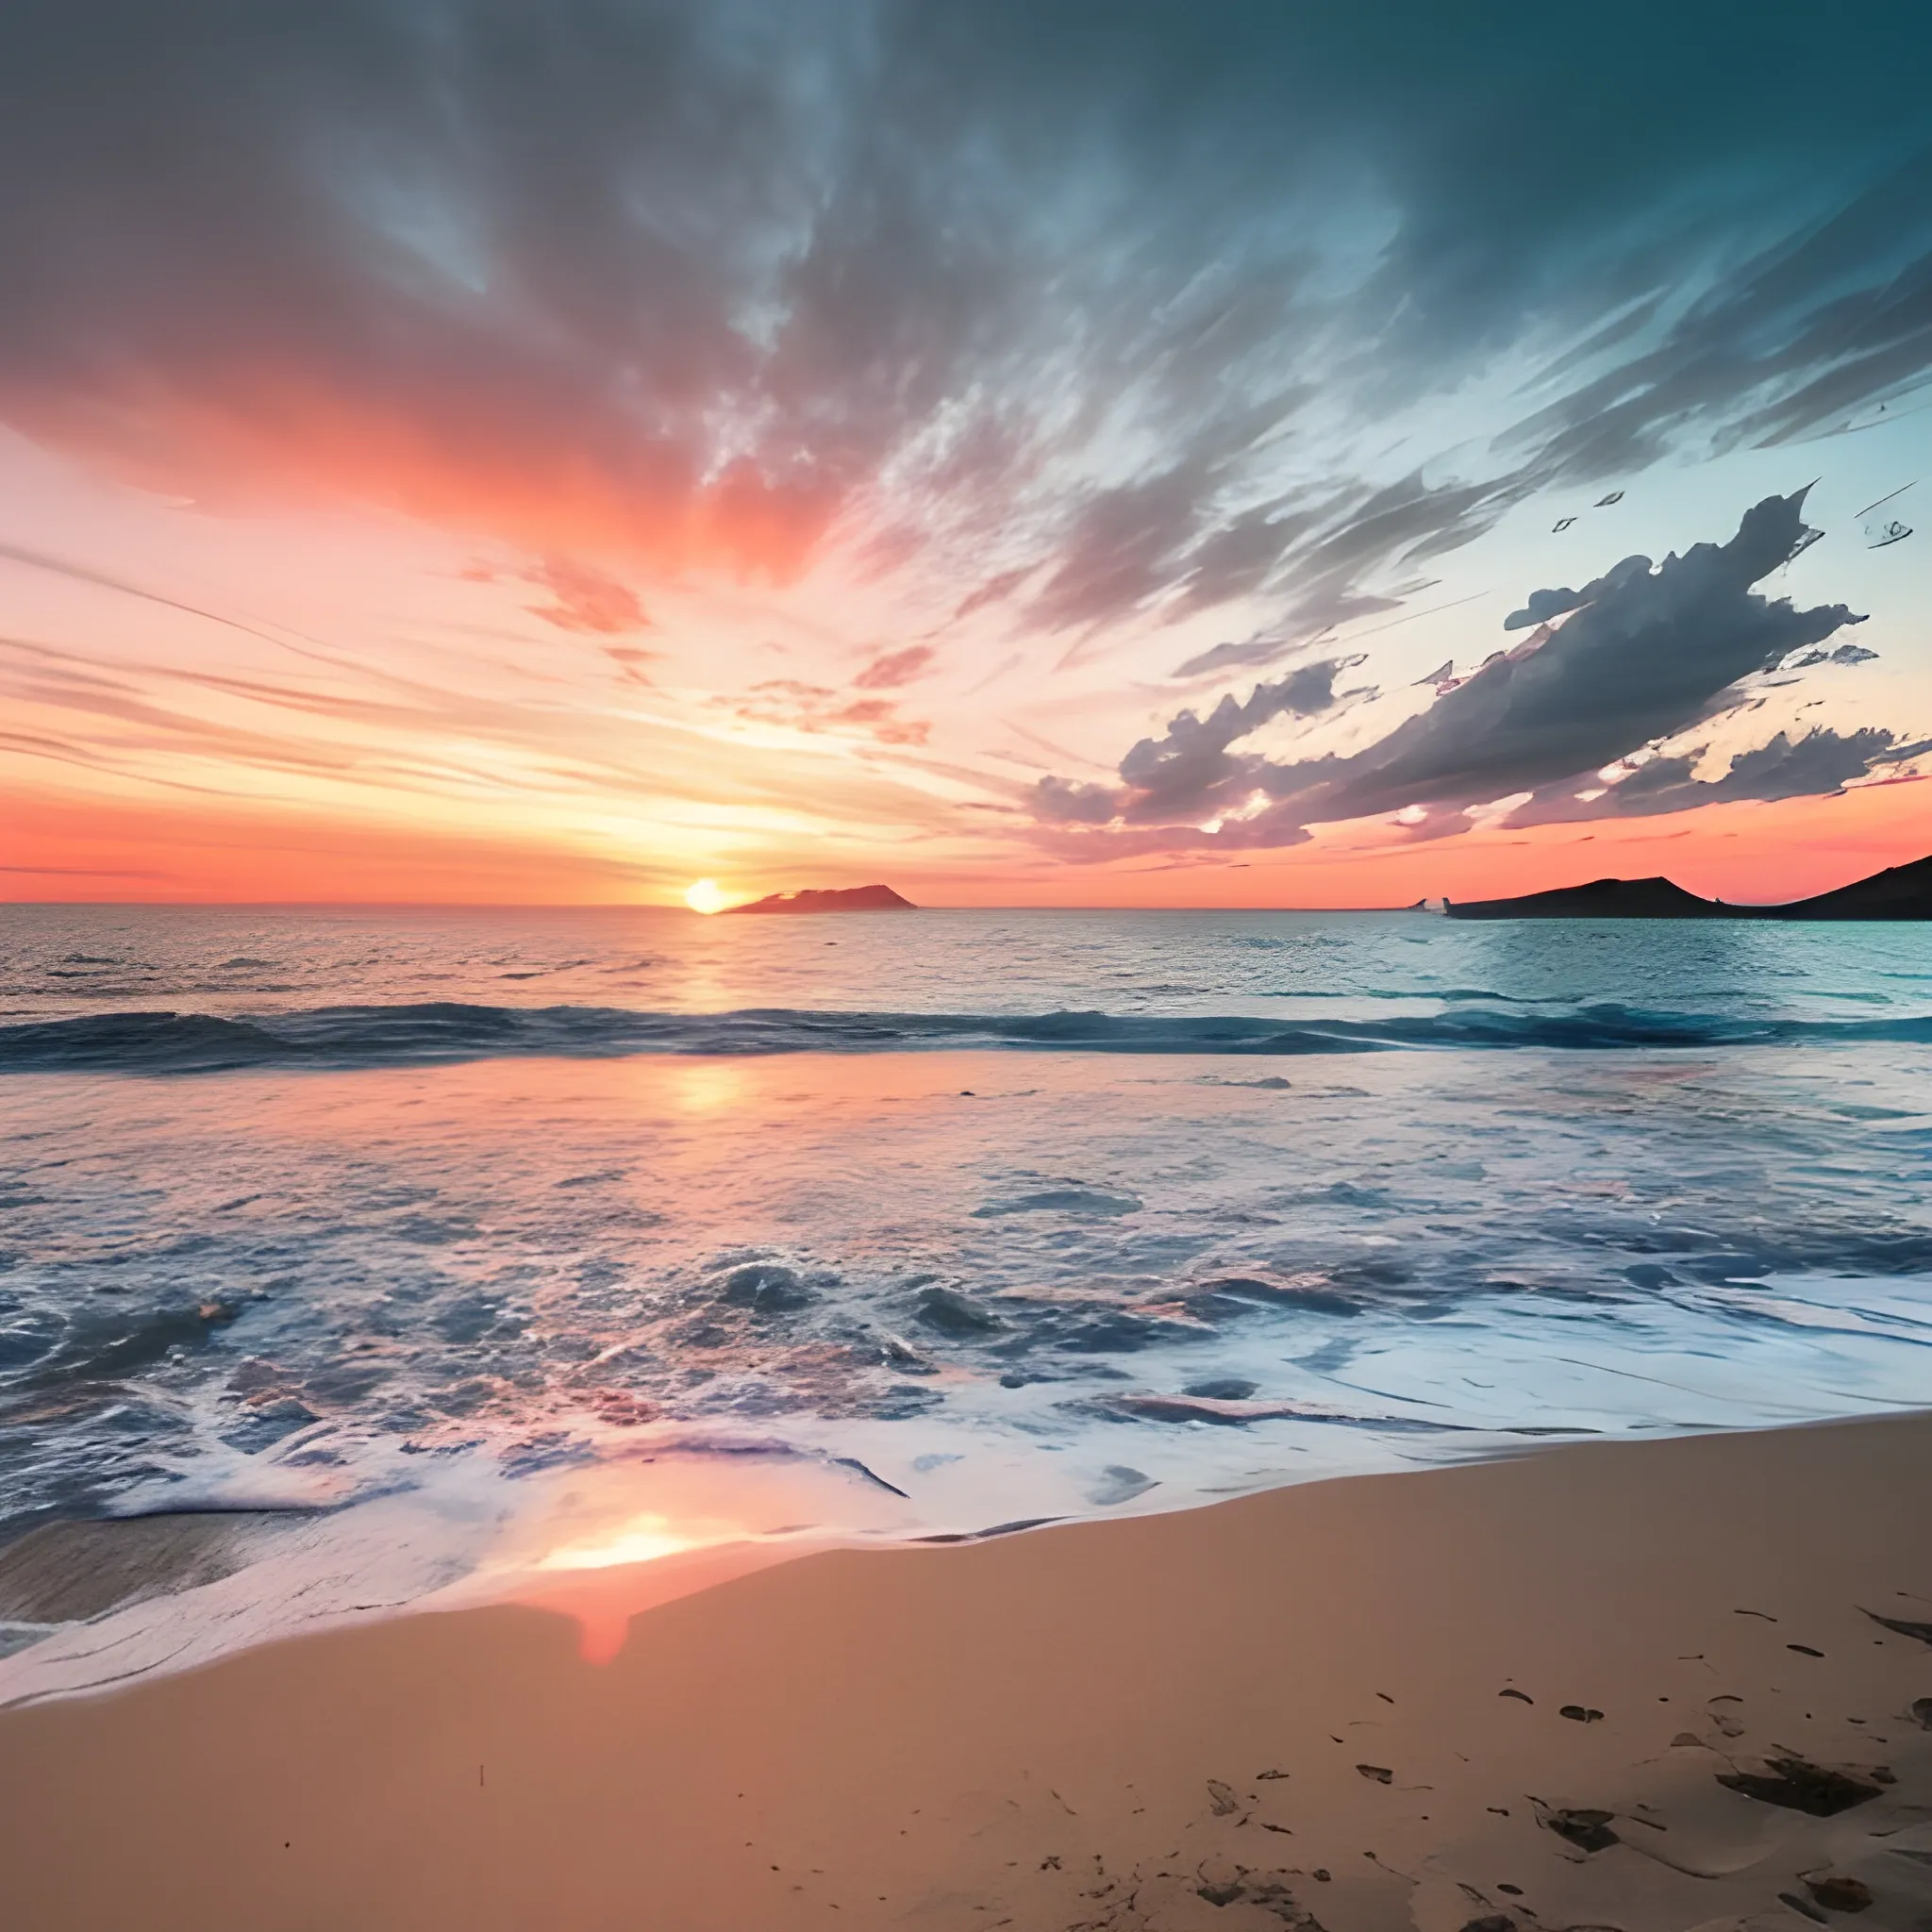 Crea una escena en la que un fotógrafo profesional está tratando de capturar la imagen perfecta de un atardecer en la playa. Describe su proceso creativo.